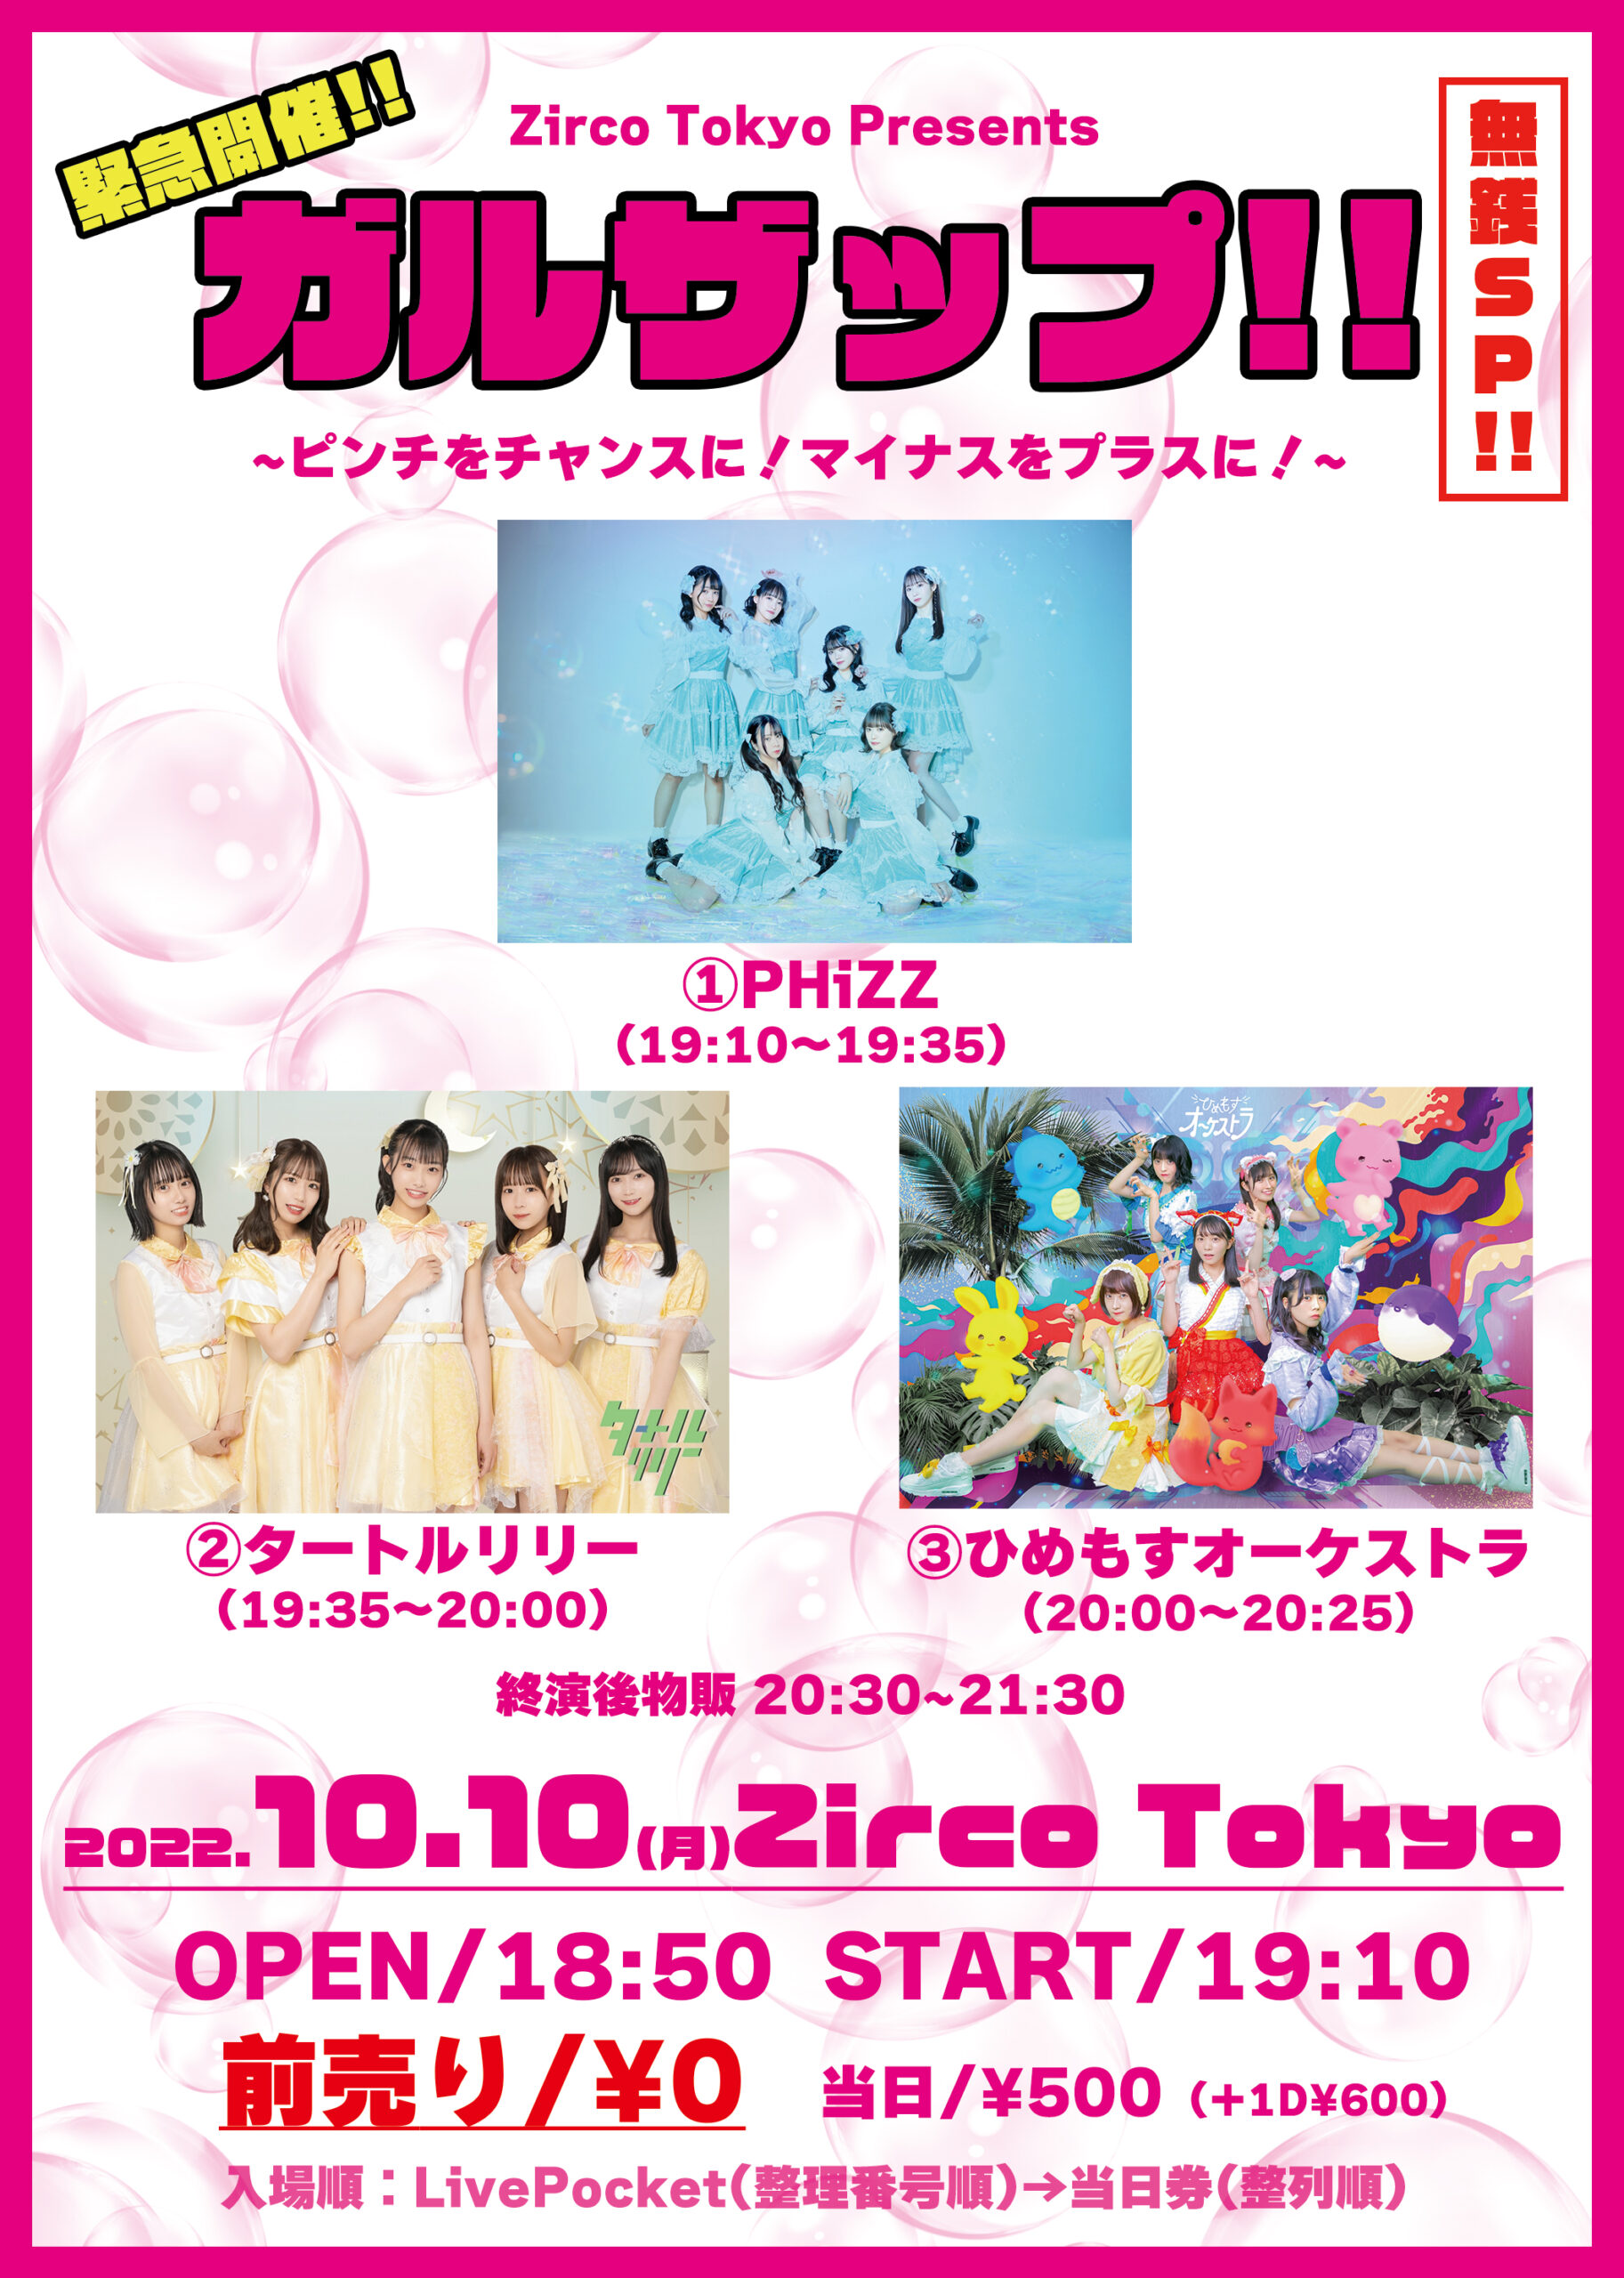 Zirco Tokyo Presents ガルザップ!!無銭SP ピンチをチャンスに！マイナスをプラスに！